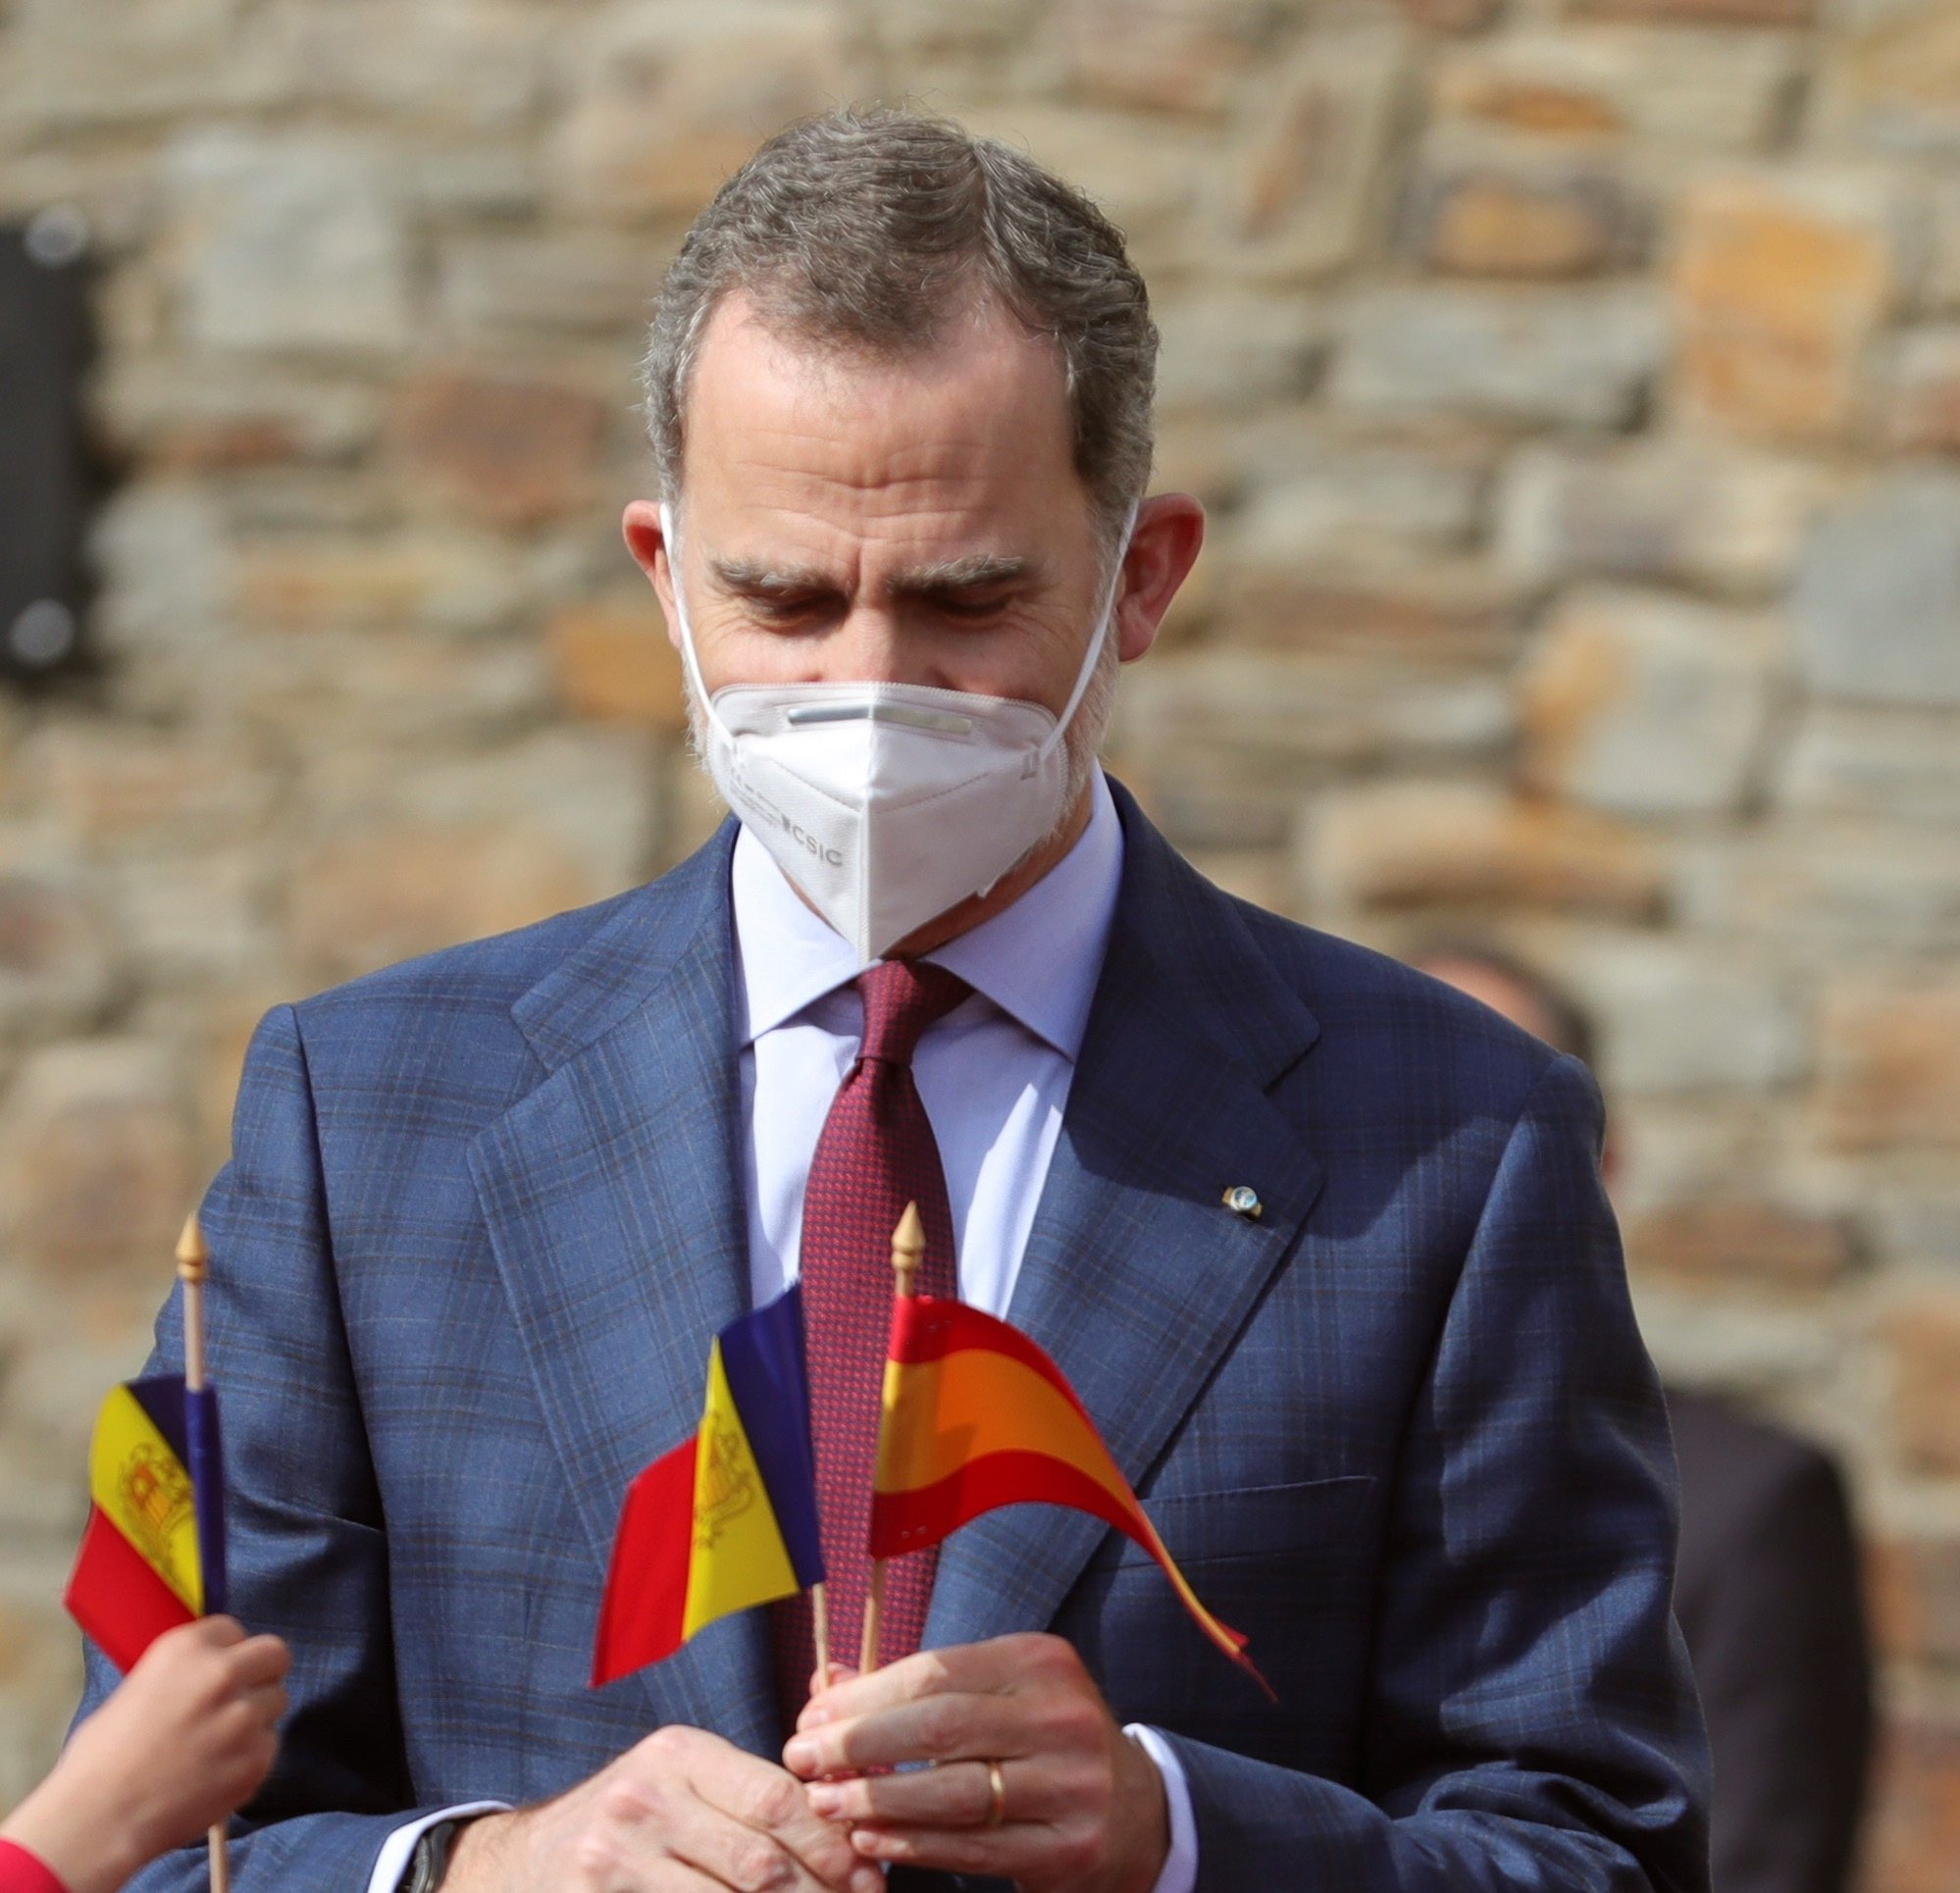 Ridícul del rei a Andorra: no parla bé el català ni troba la seva copa